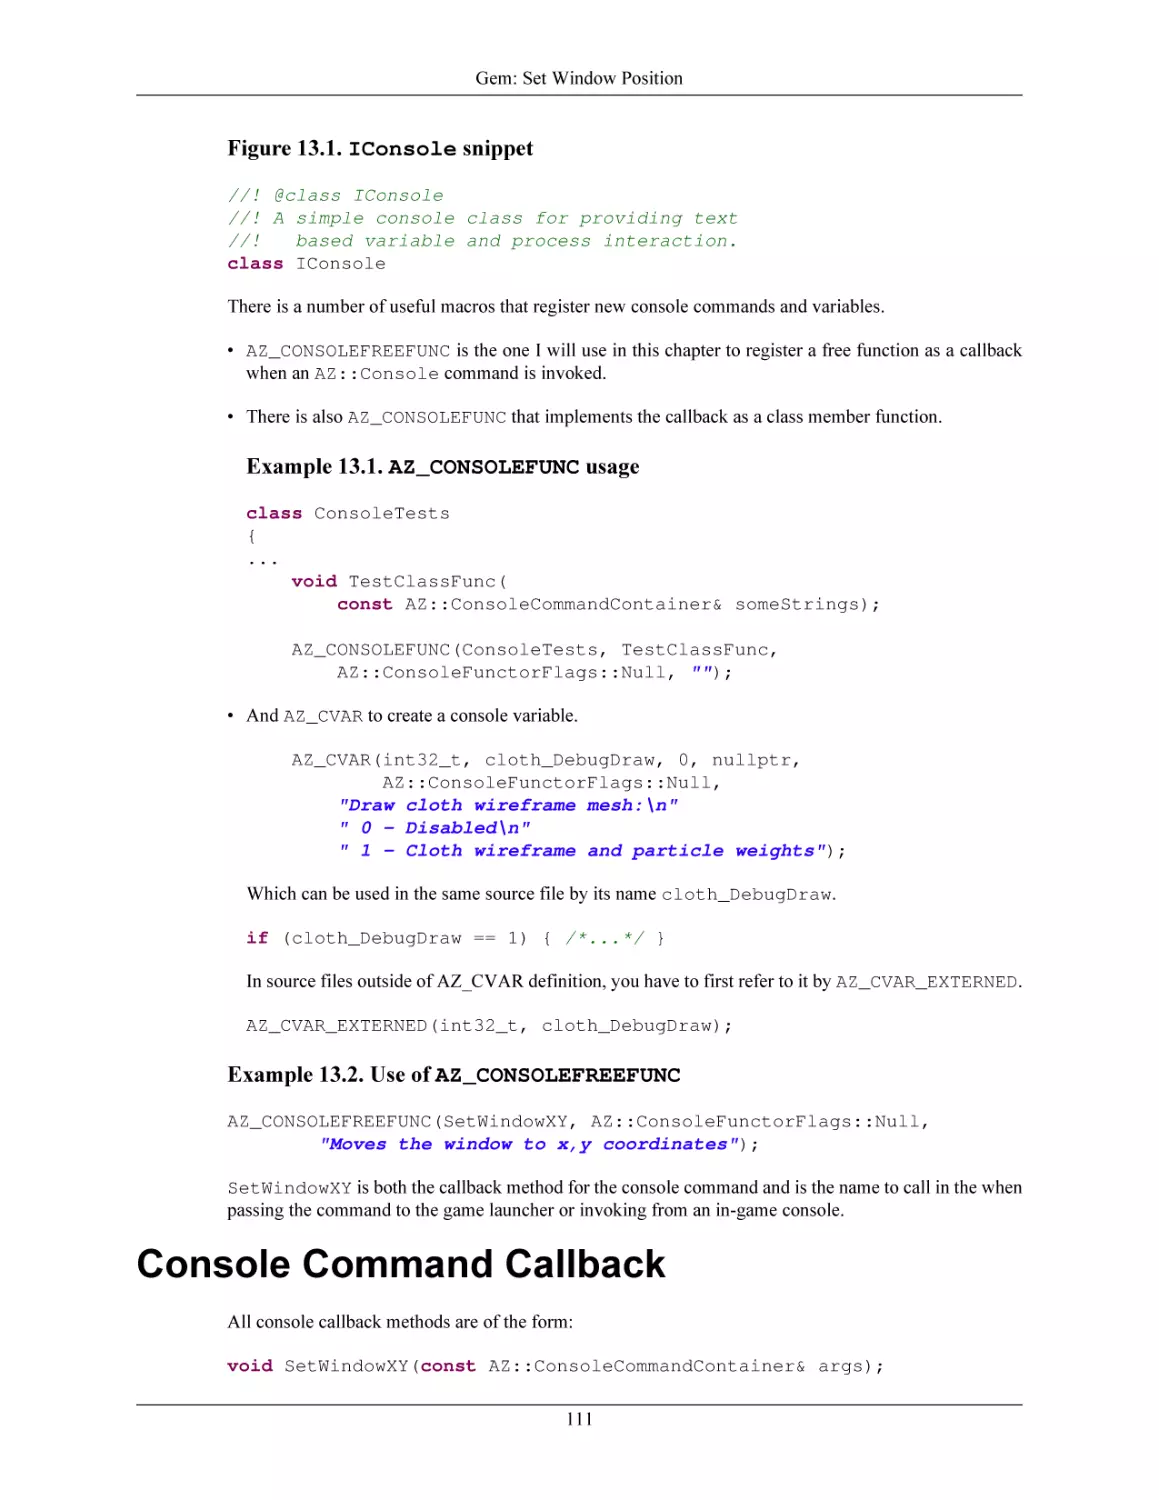 Console Command Callback